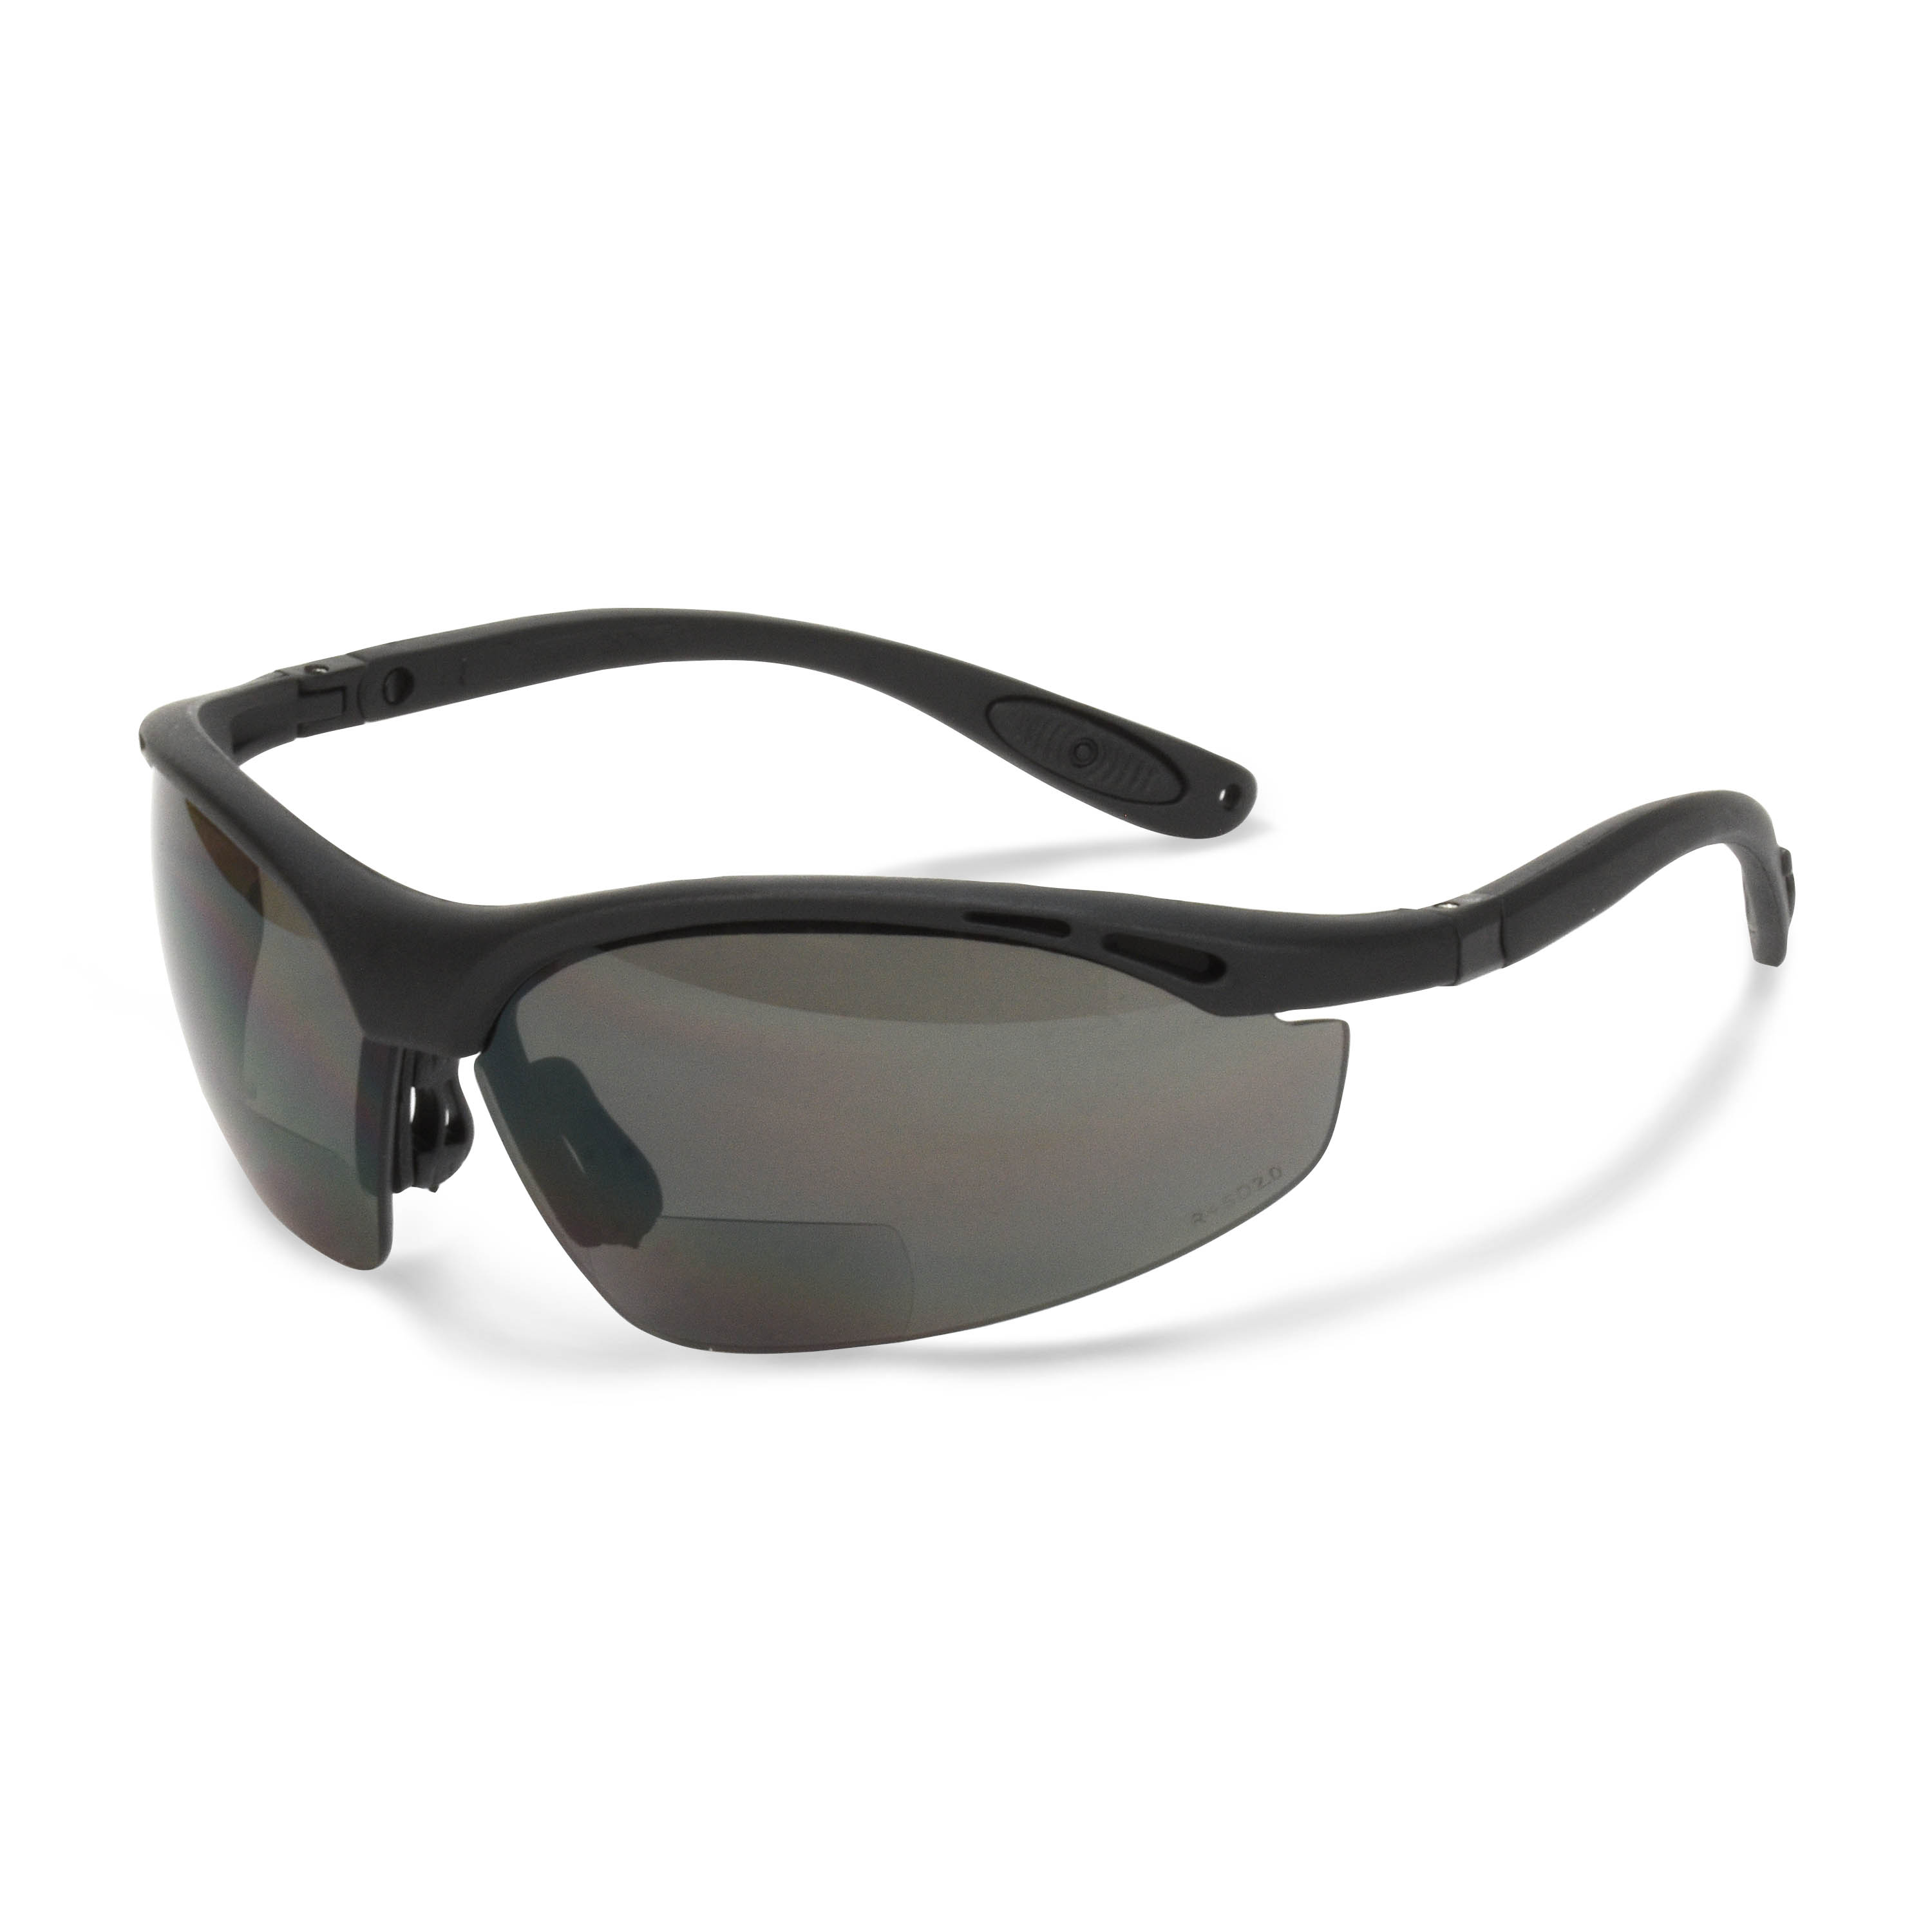 Cheaters® Bi-Focal Eyewear - Black Frame - Smoke Lens - 1.5 Diopter